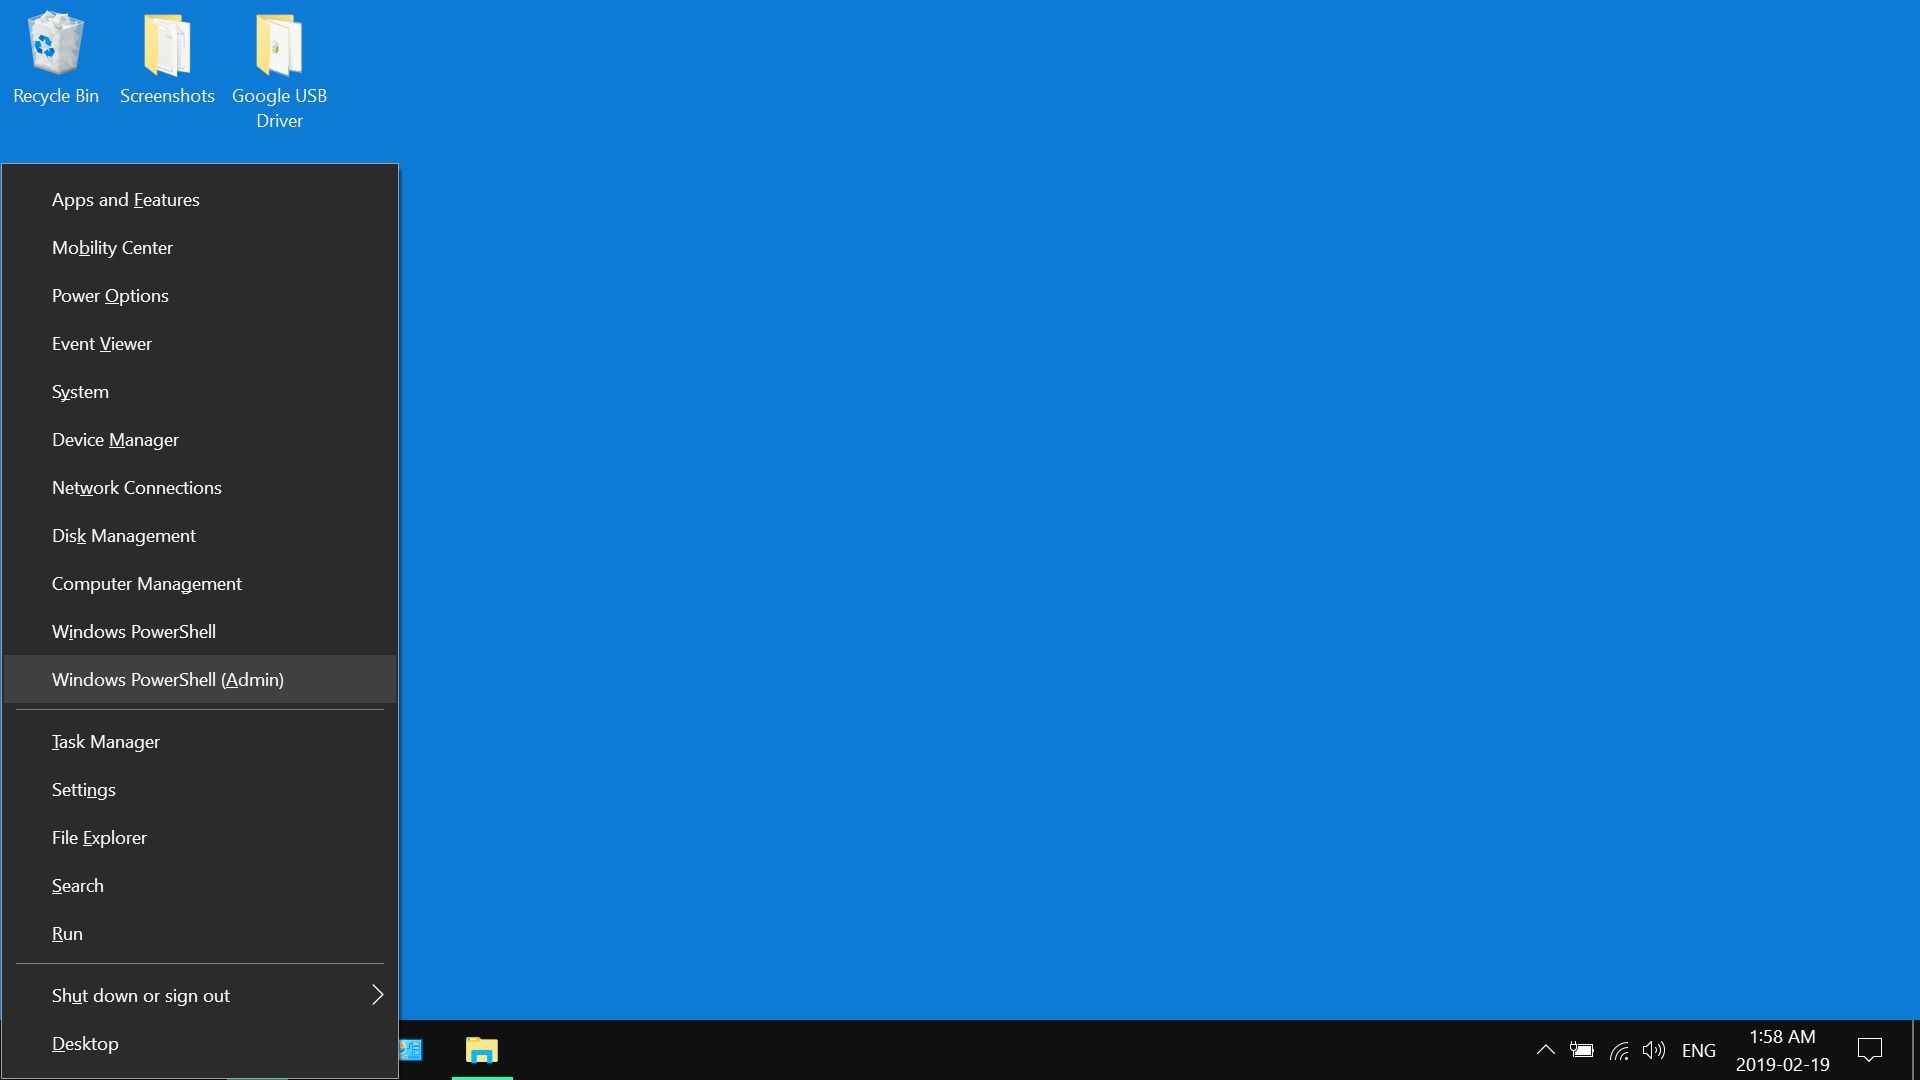 Скриншот меню быстрых ссылок в Windows 10.